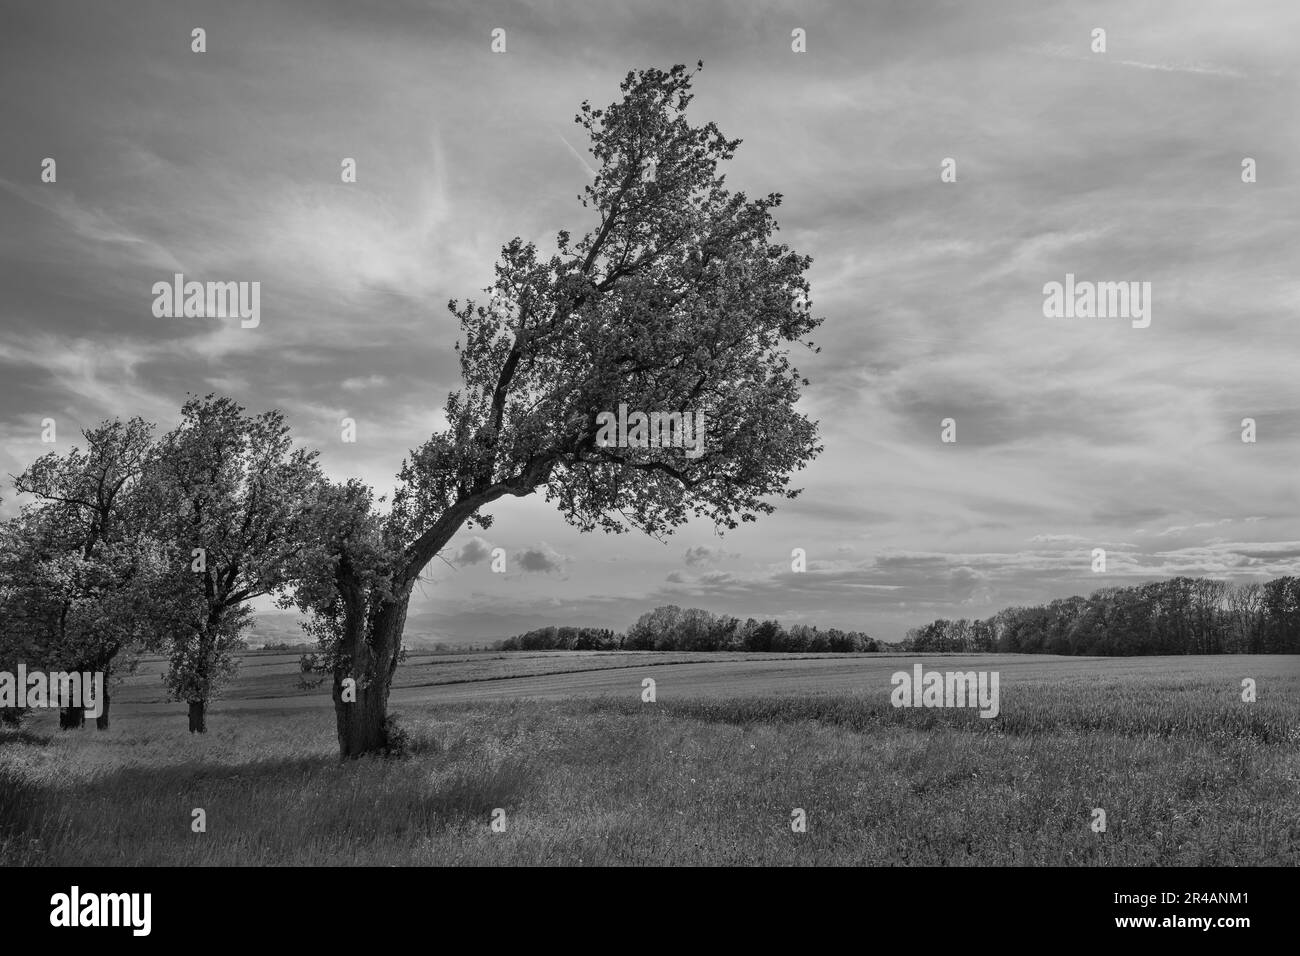 L'albero storto e il paesaggio primaverile nella regione di Mostviertel o nell'Alpenvorland nella bassa Austria in bianco e nero monocromatico Foto Stock